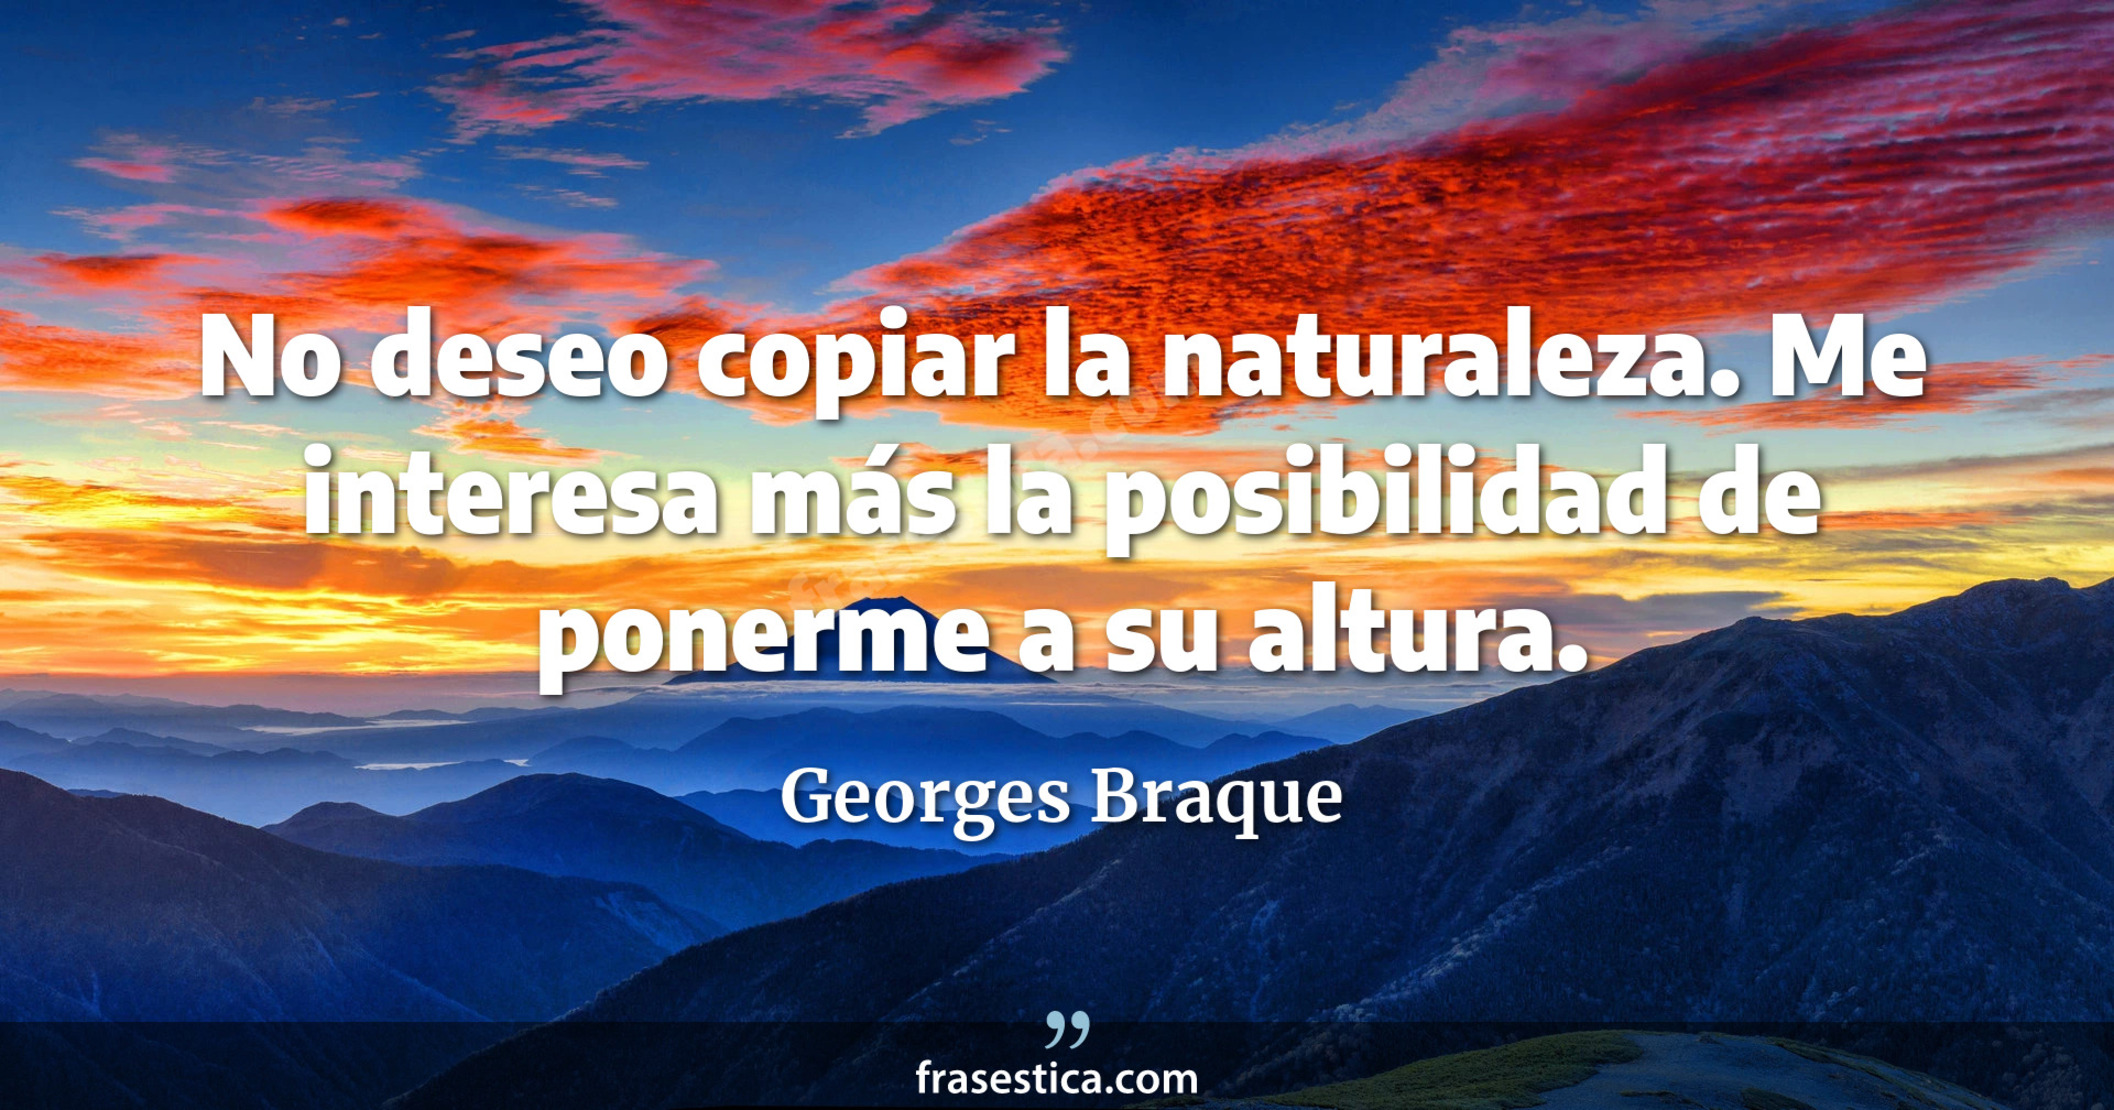 No deseo copiar la naturaleza. Me interesa más la posibilidad de ponerme a su altura. - Georges Braque